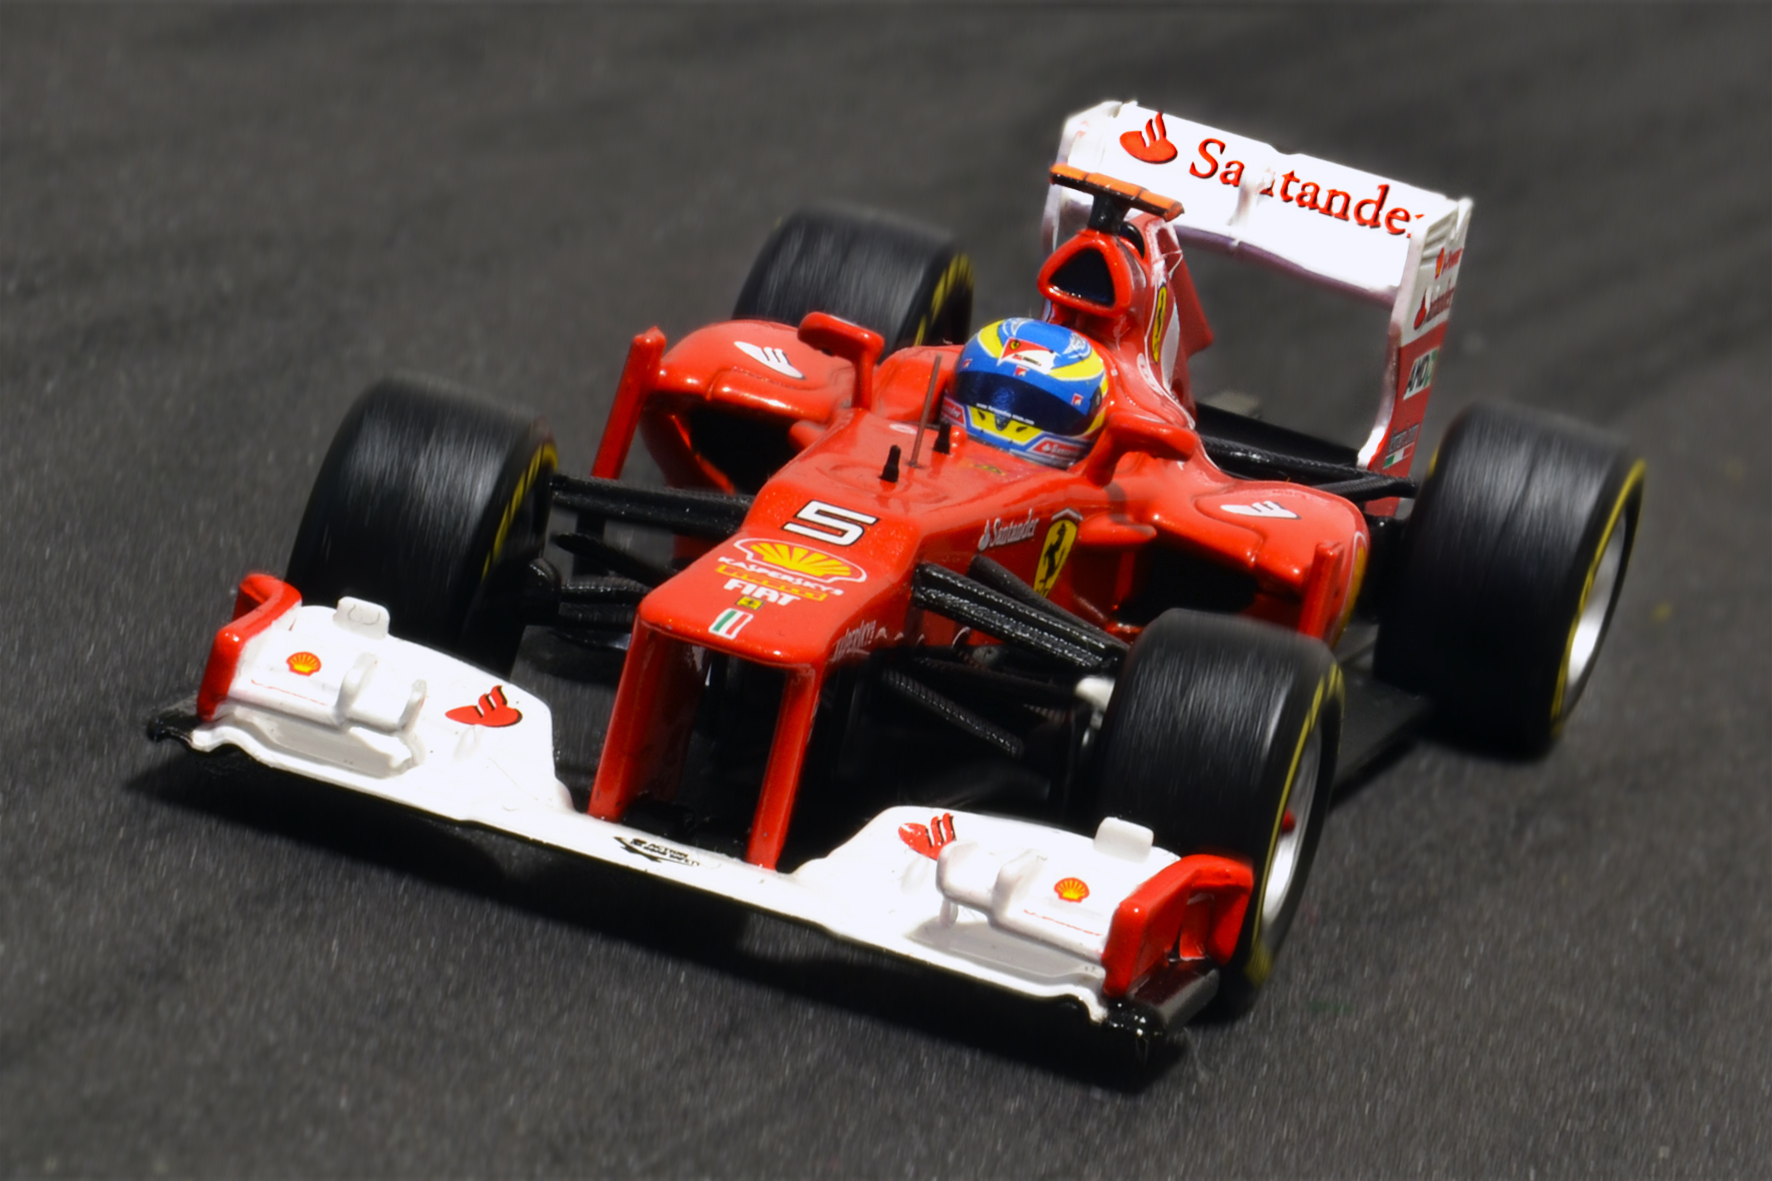 Ferrari F2012 Fernando Alonso 2012 - Hot Wheels 1:43